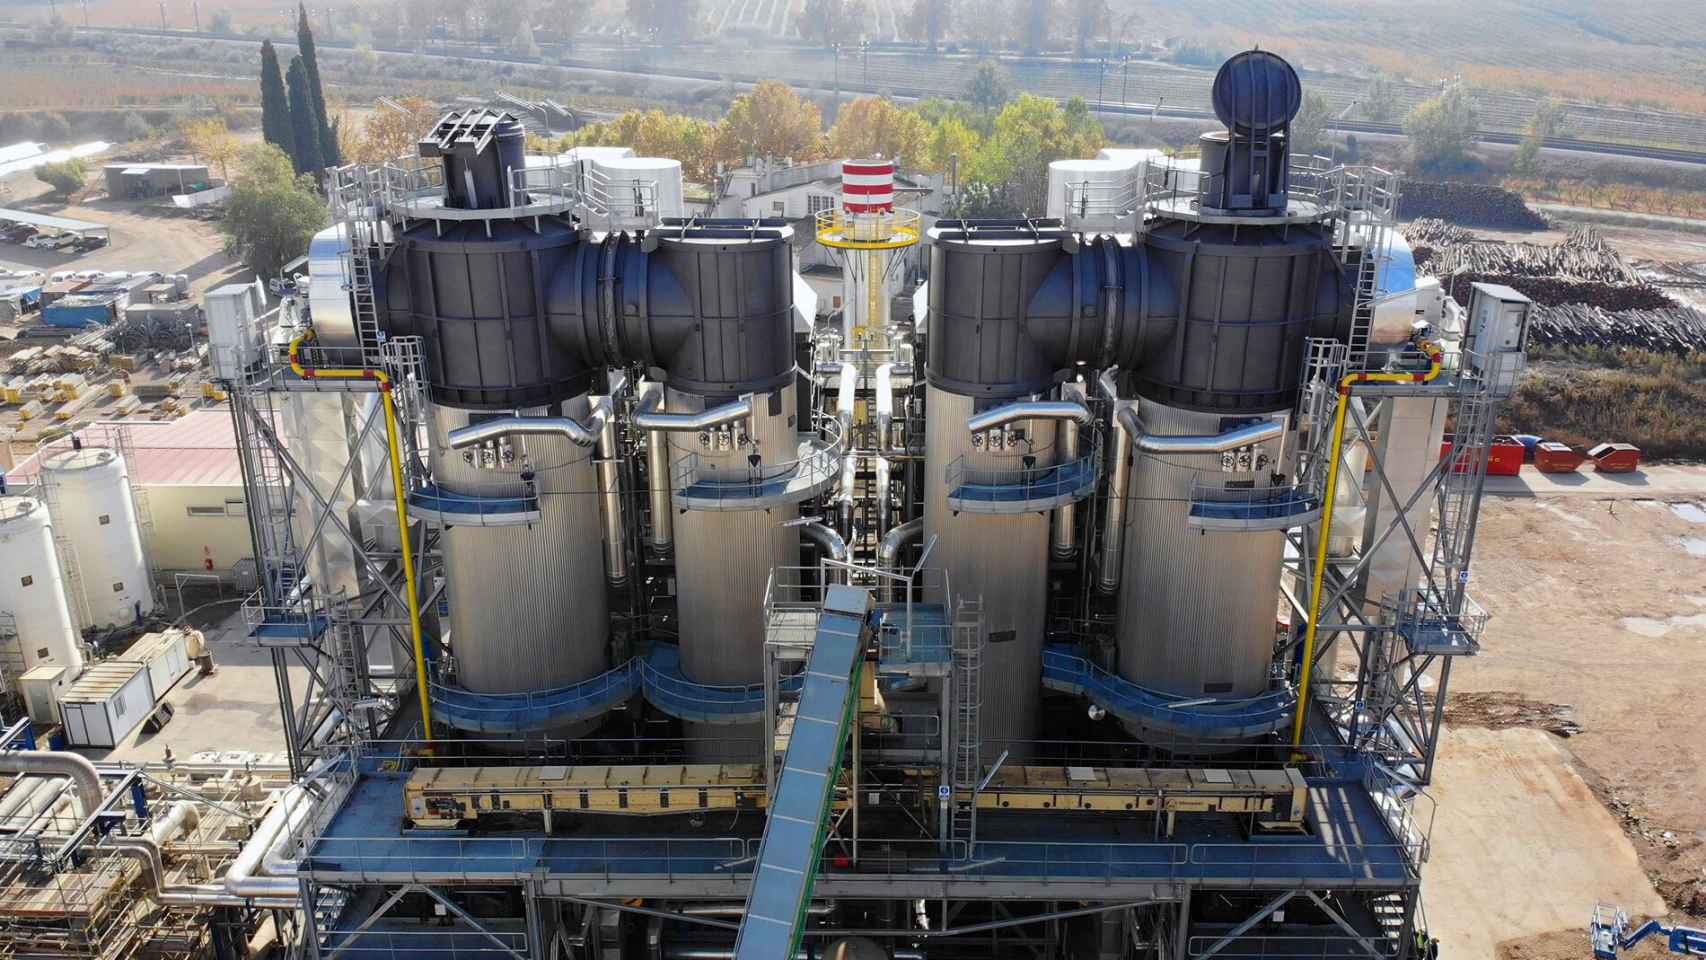 La planta ubicada en Les Borges Blanques (Lleida) fabricada por Sugimat combina la producción termosolar con la generada a partir de biomasa.